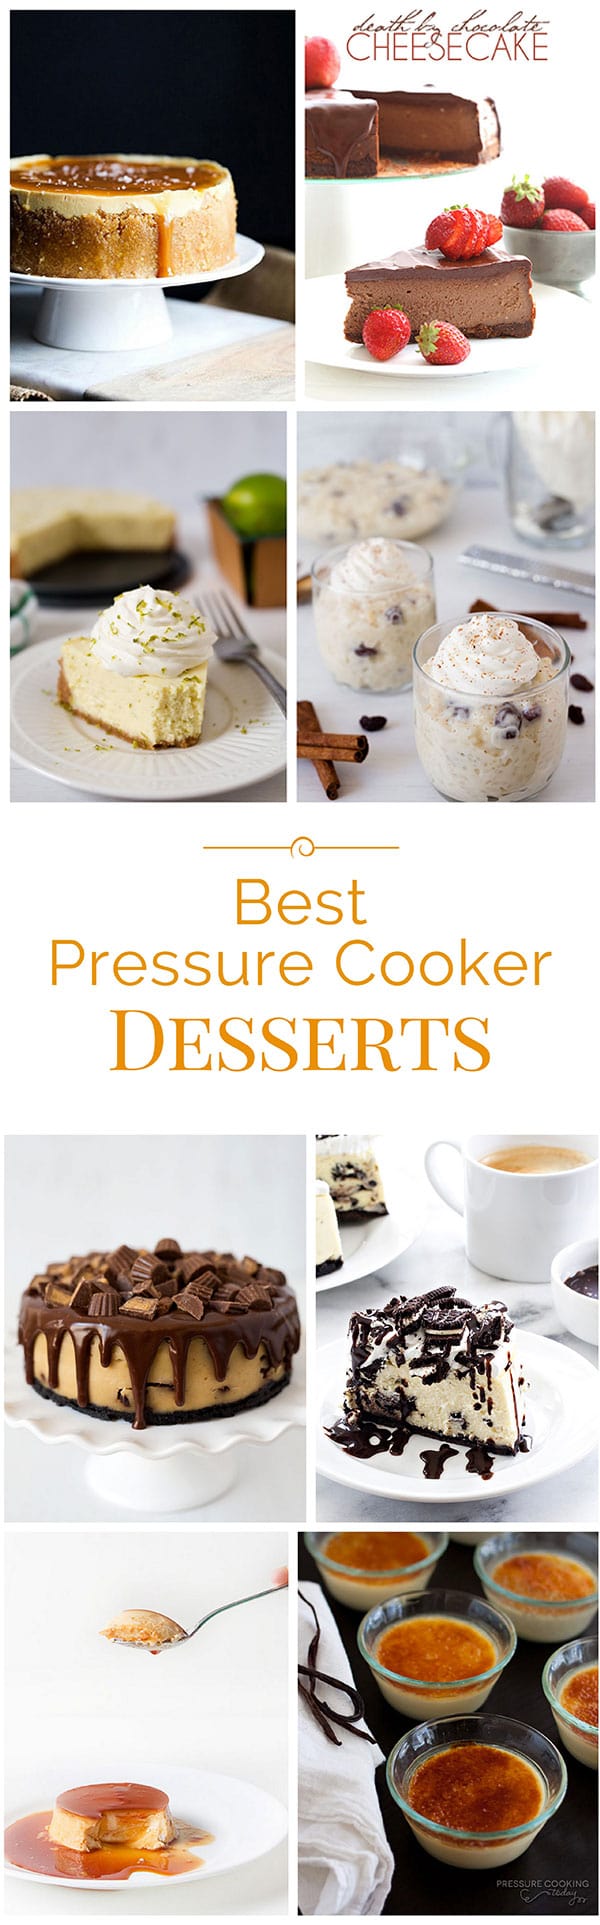 Best-Pressure-Cooker-Desserts-Collage